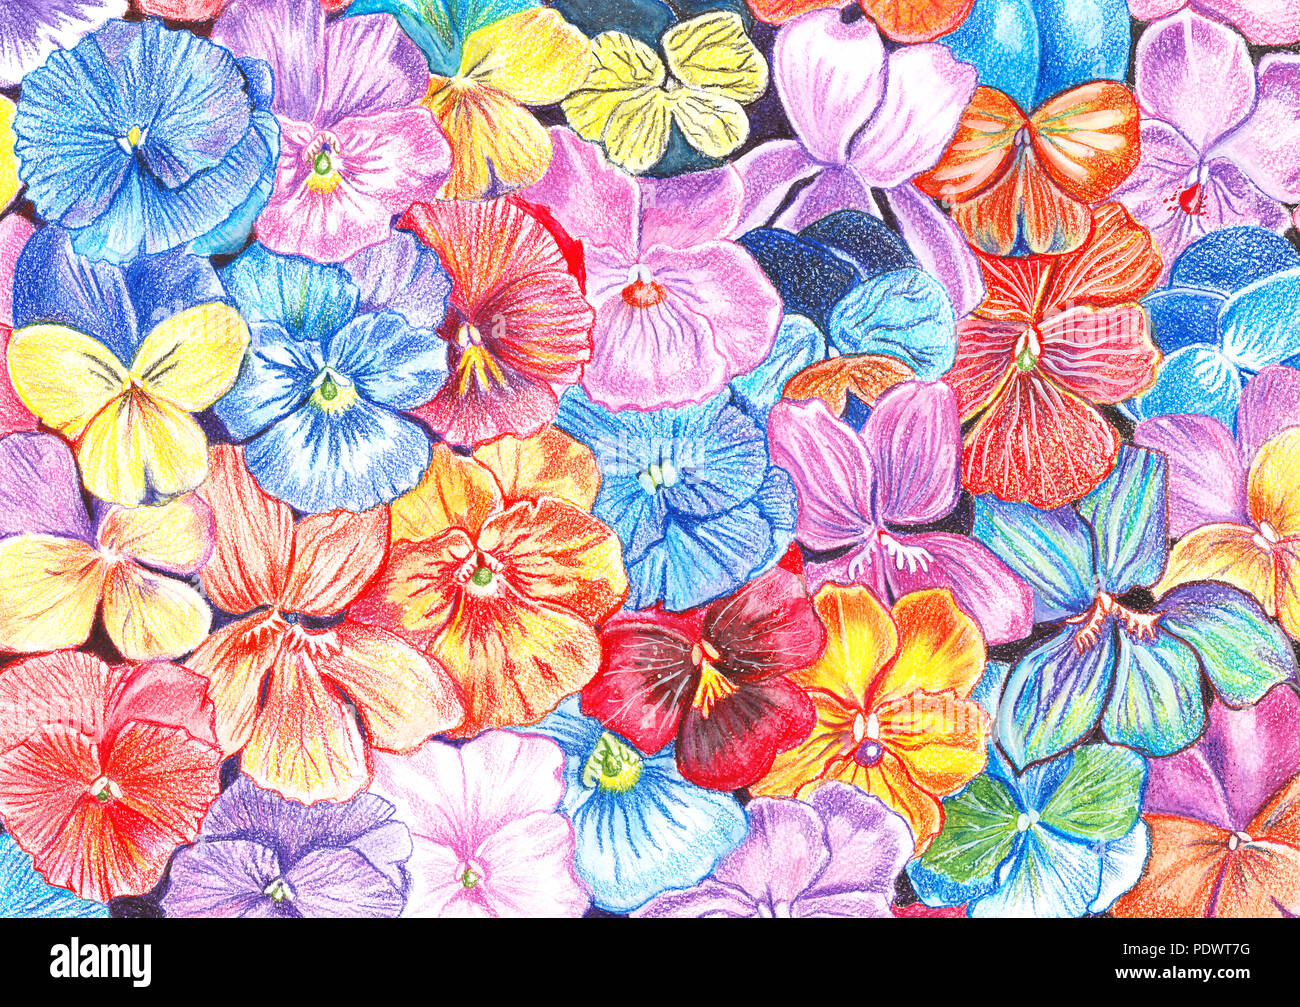 Disegno A Mano Con Matite Ad Acquarello Fiori Di Viole Di Diversi Colori In Background Foto Stock Alamy